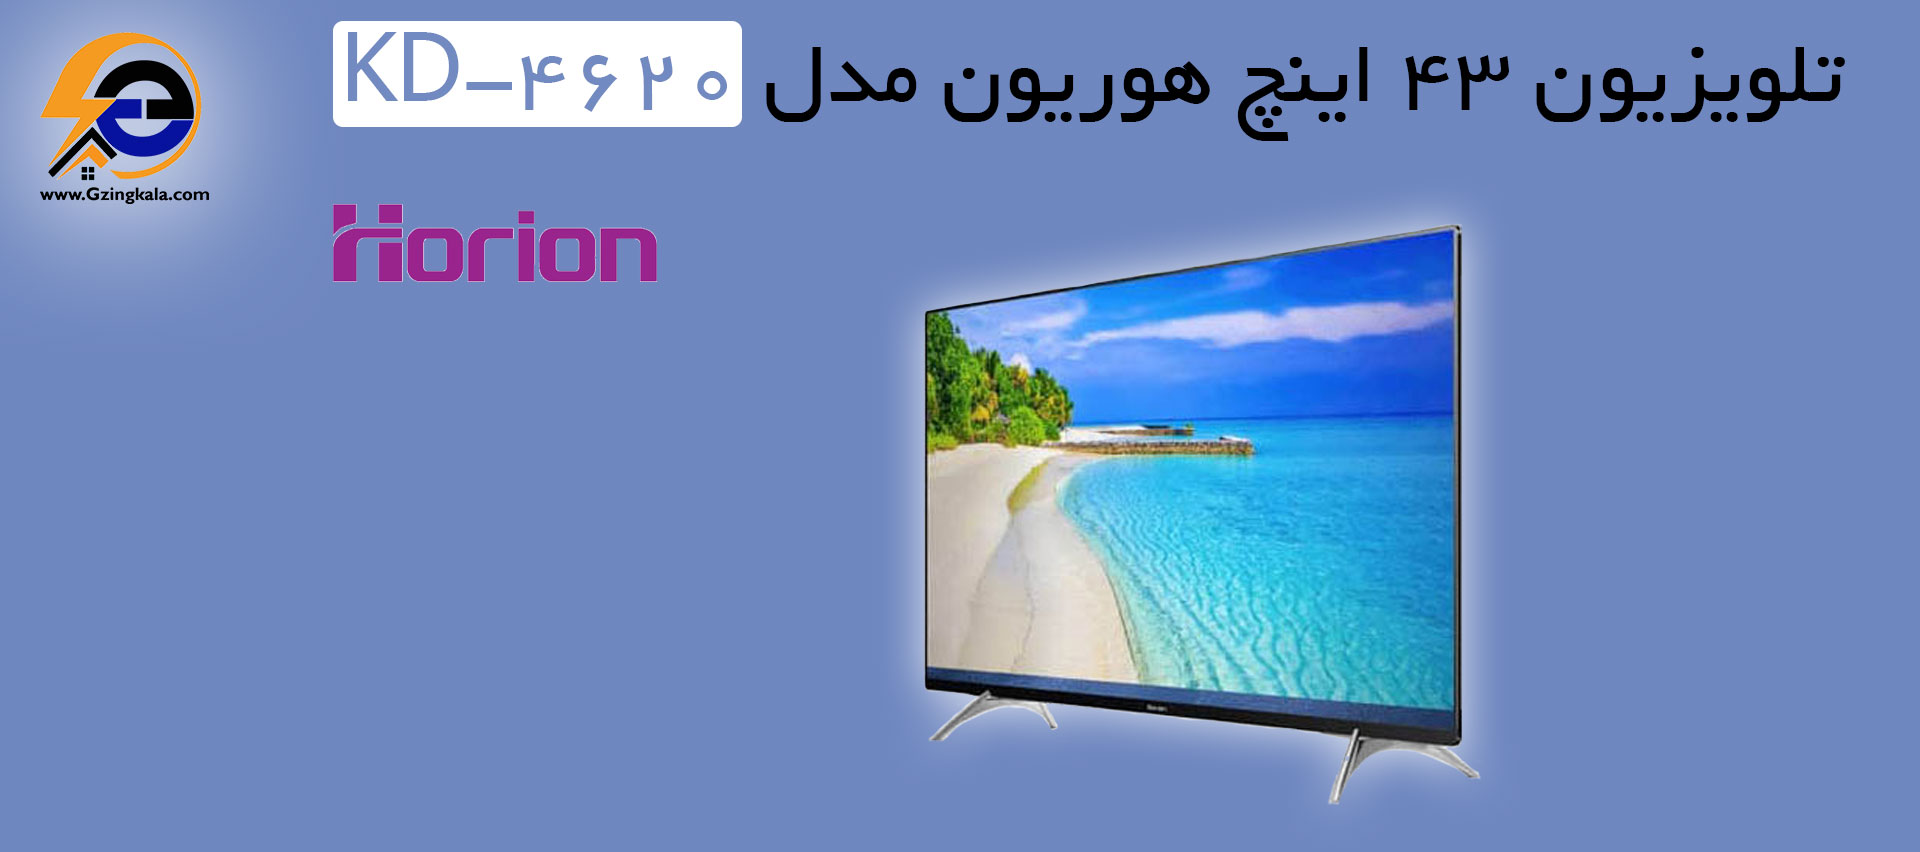 تلویزیون ۴۳ اینچ هوریون مدل KD-4620